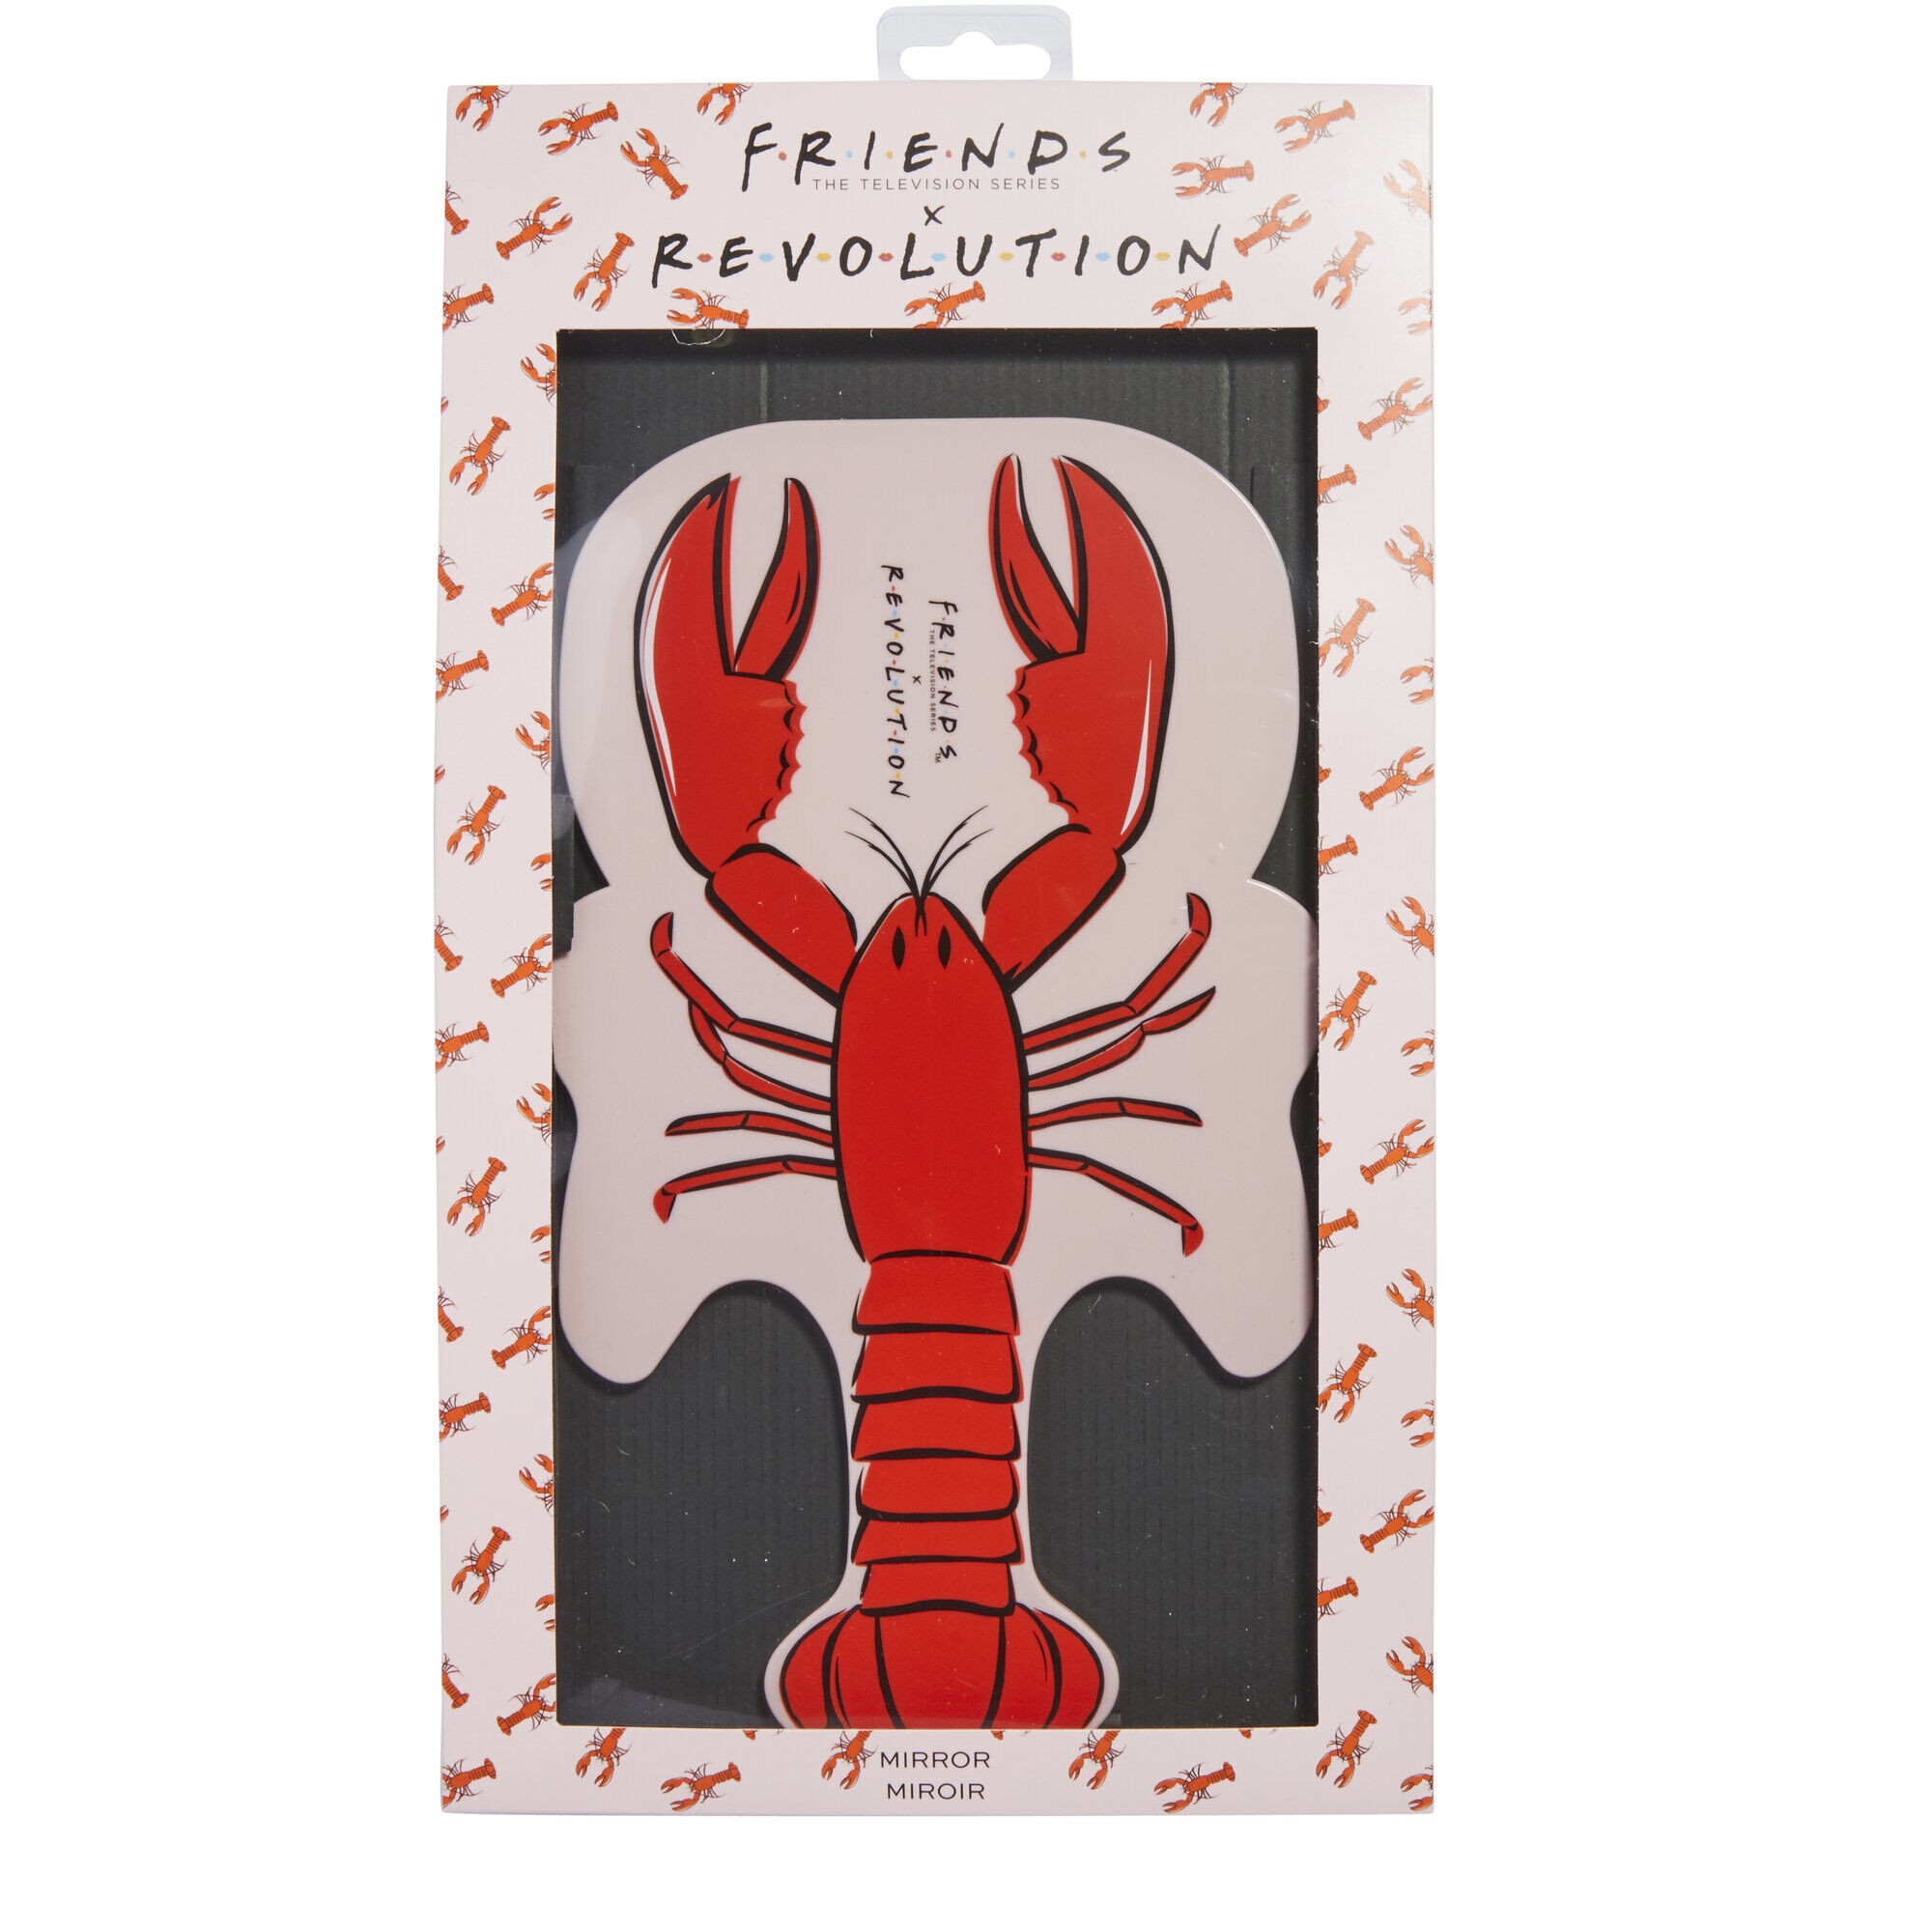 Miroir - Makeup Revolution X Friends - Lobster Mirror 